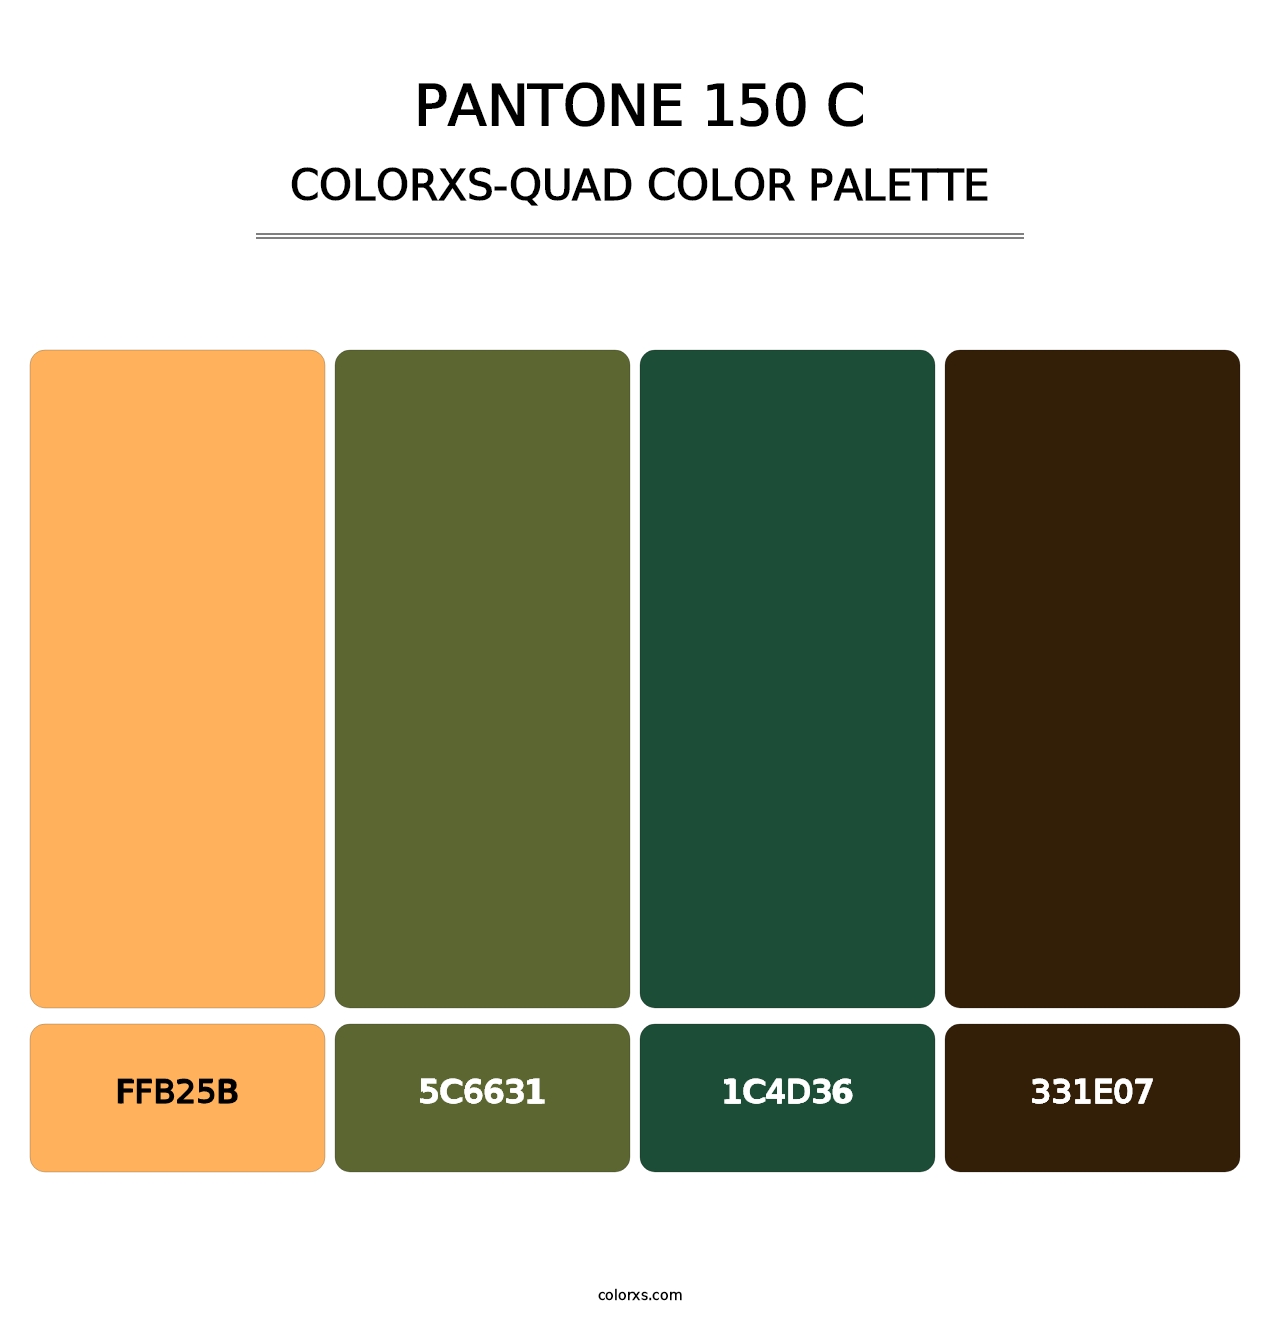 PANTONE 150 C - Colorxs Quad Palette